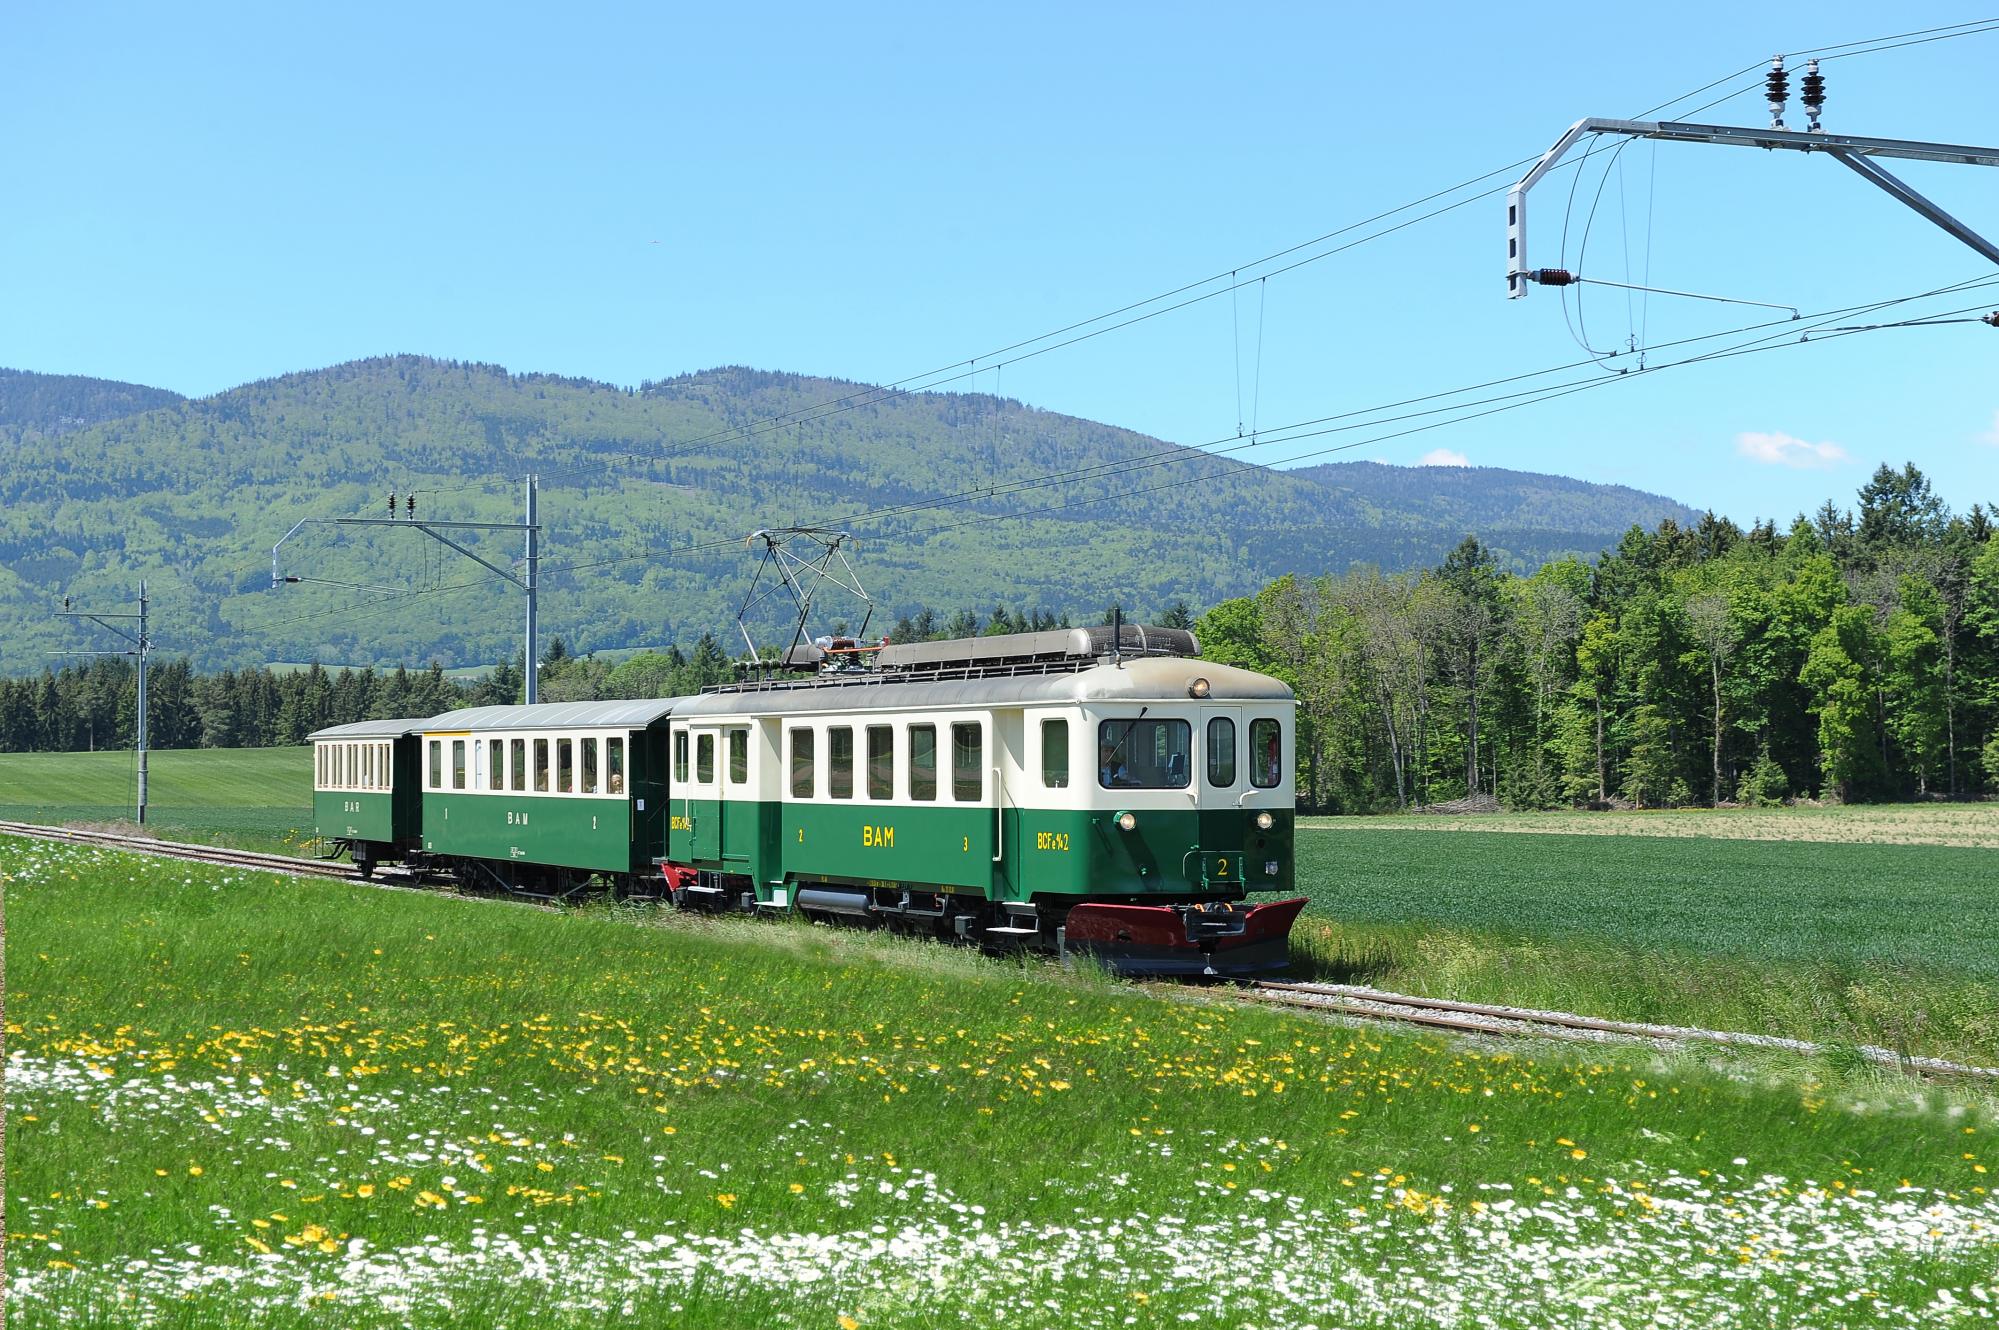 Bière-Apples-Morges Railway Line (BAM)